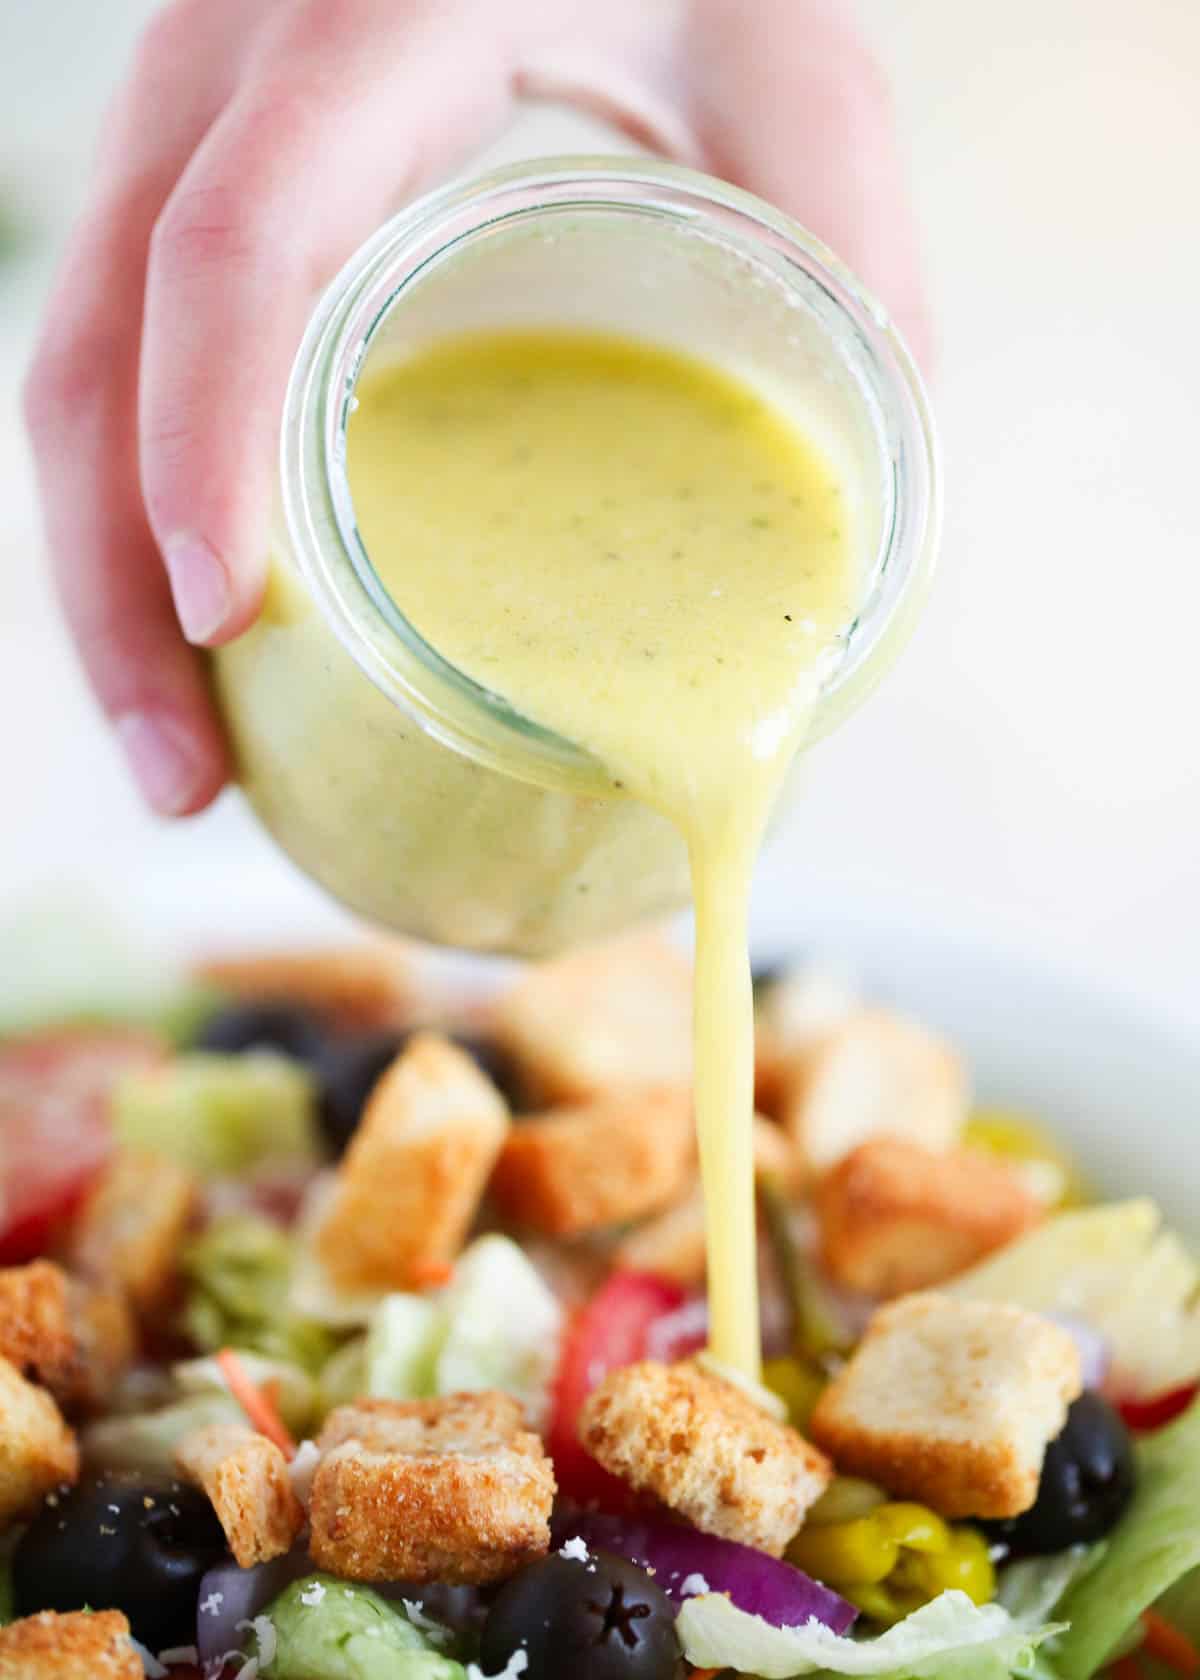 https://www.iheartnaptime.net/wp-content/uploads/2022/03/I-Heart-Naptime-olive-garden-salad-dressing-recipe-5.jpg